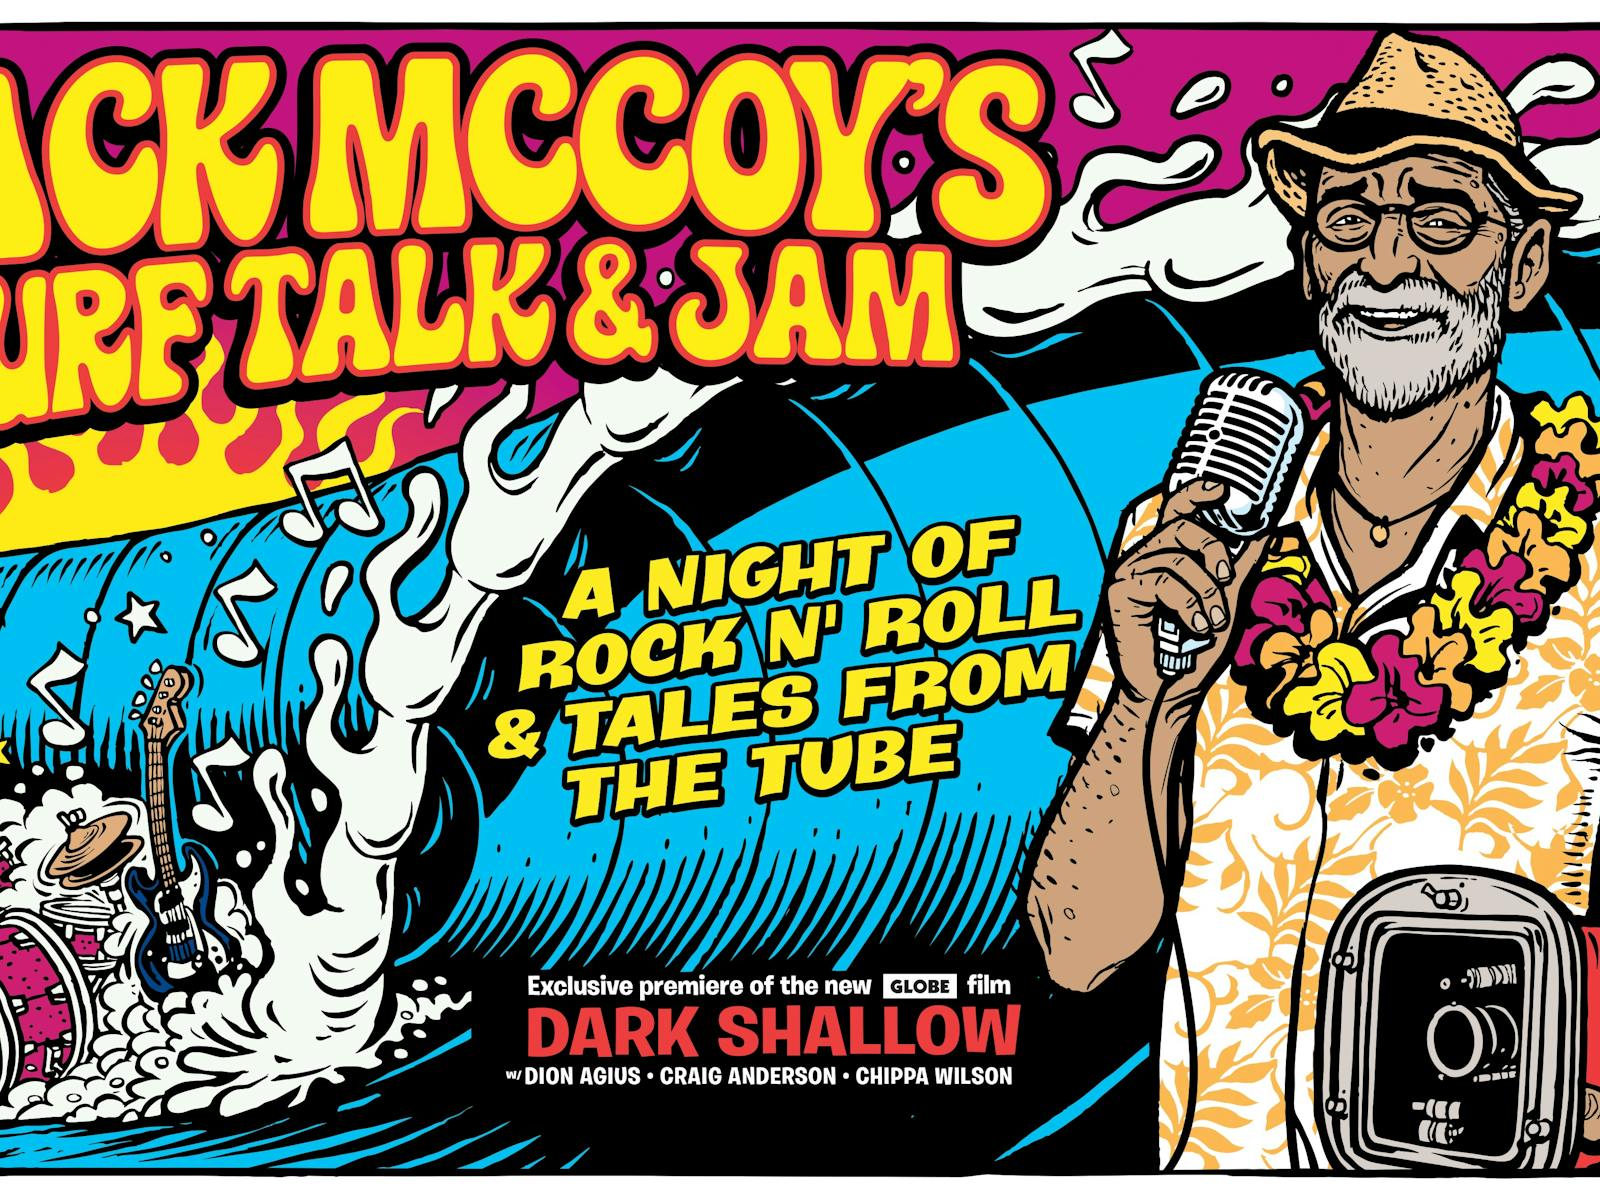 Image for Jack McCoy Surf Talk and Jam